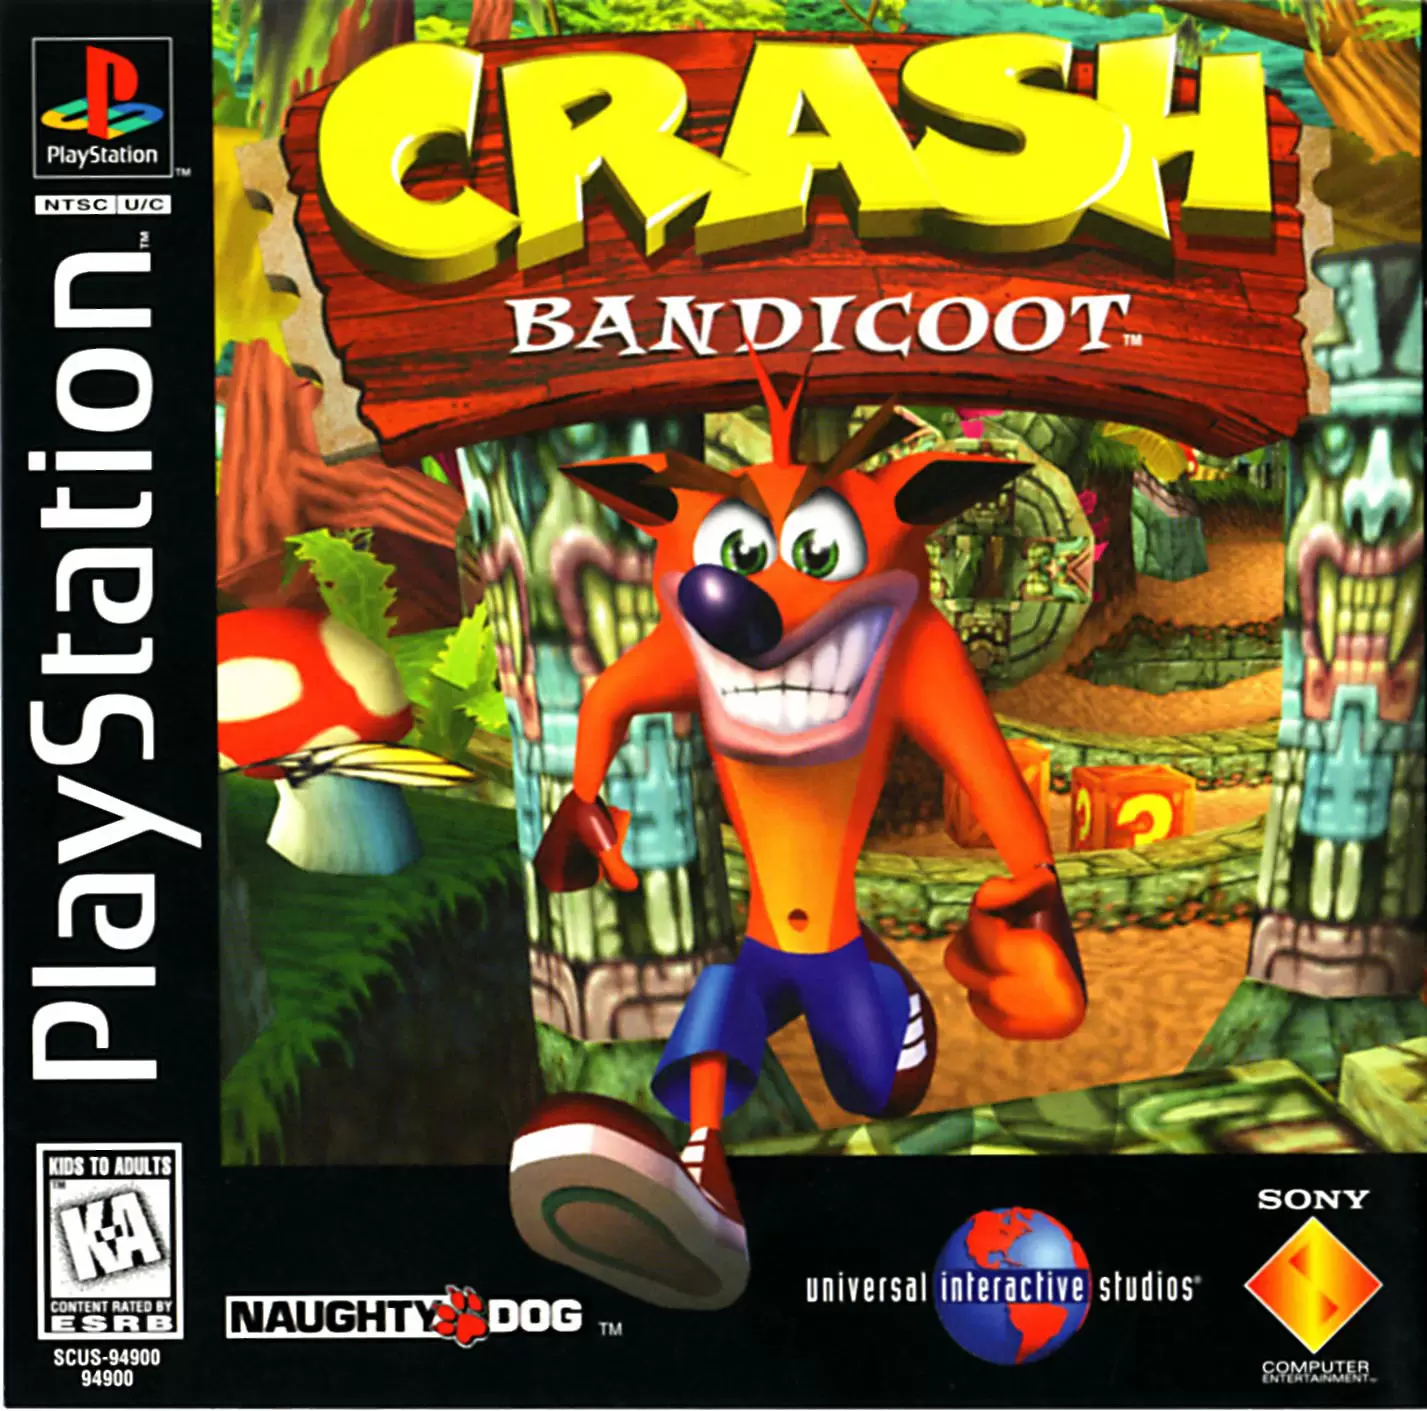 Playstation games - Crash Bandicoot